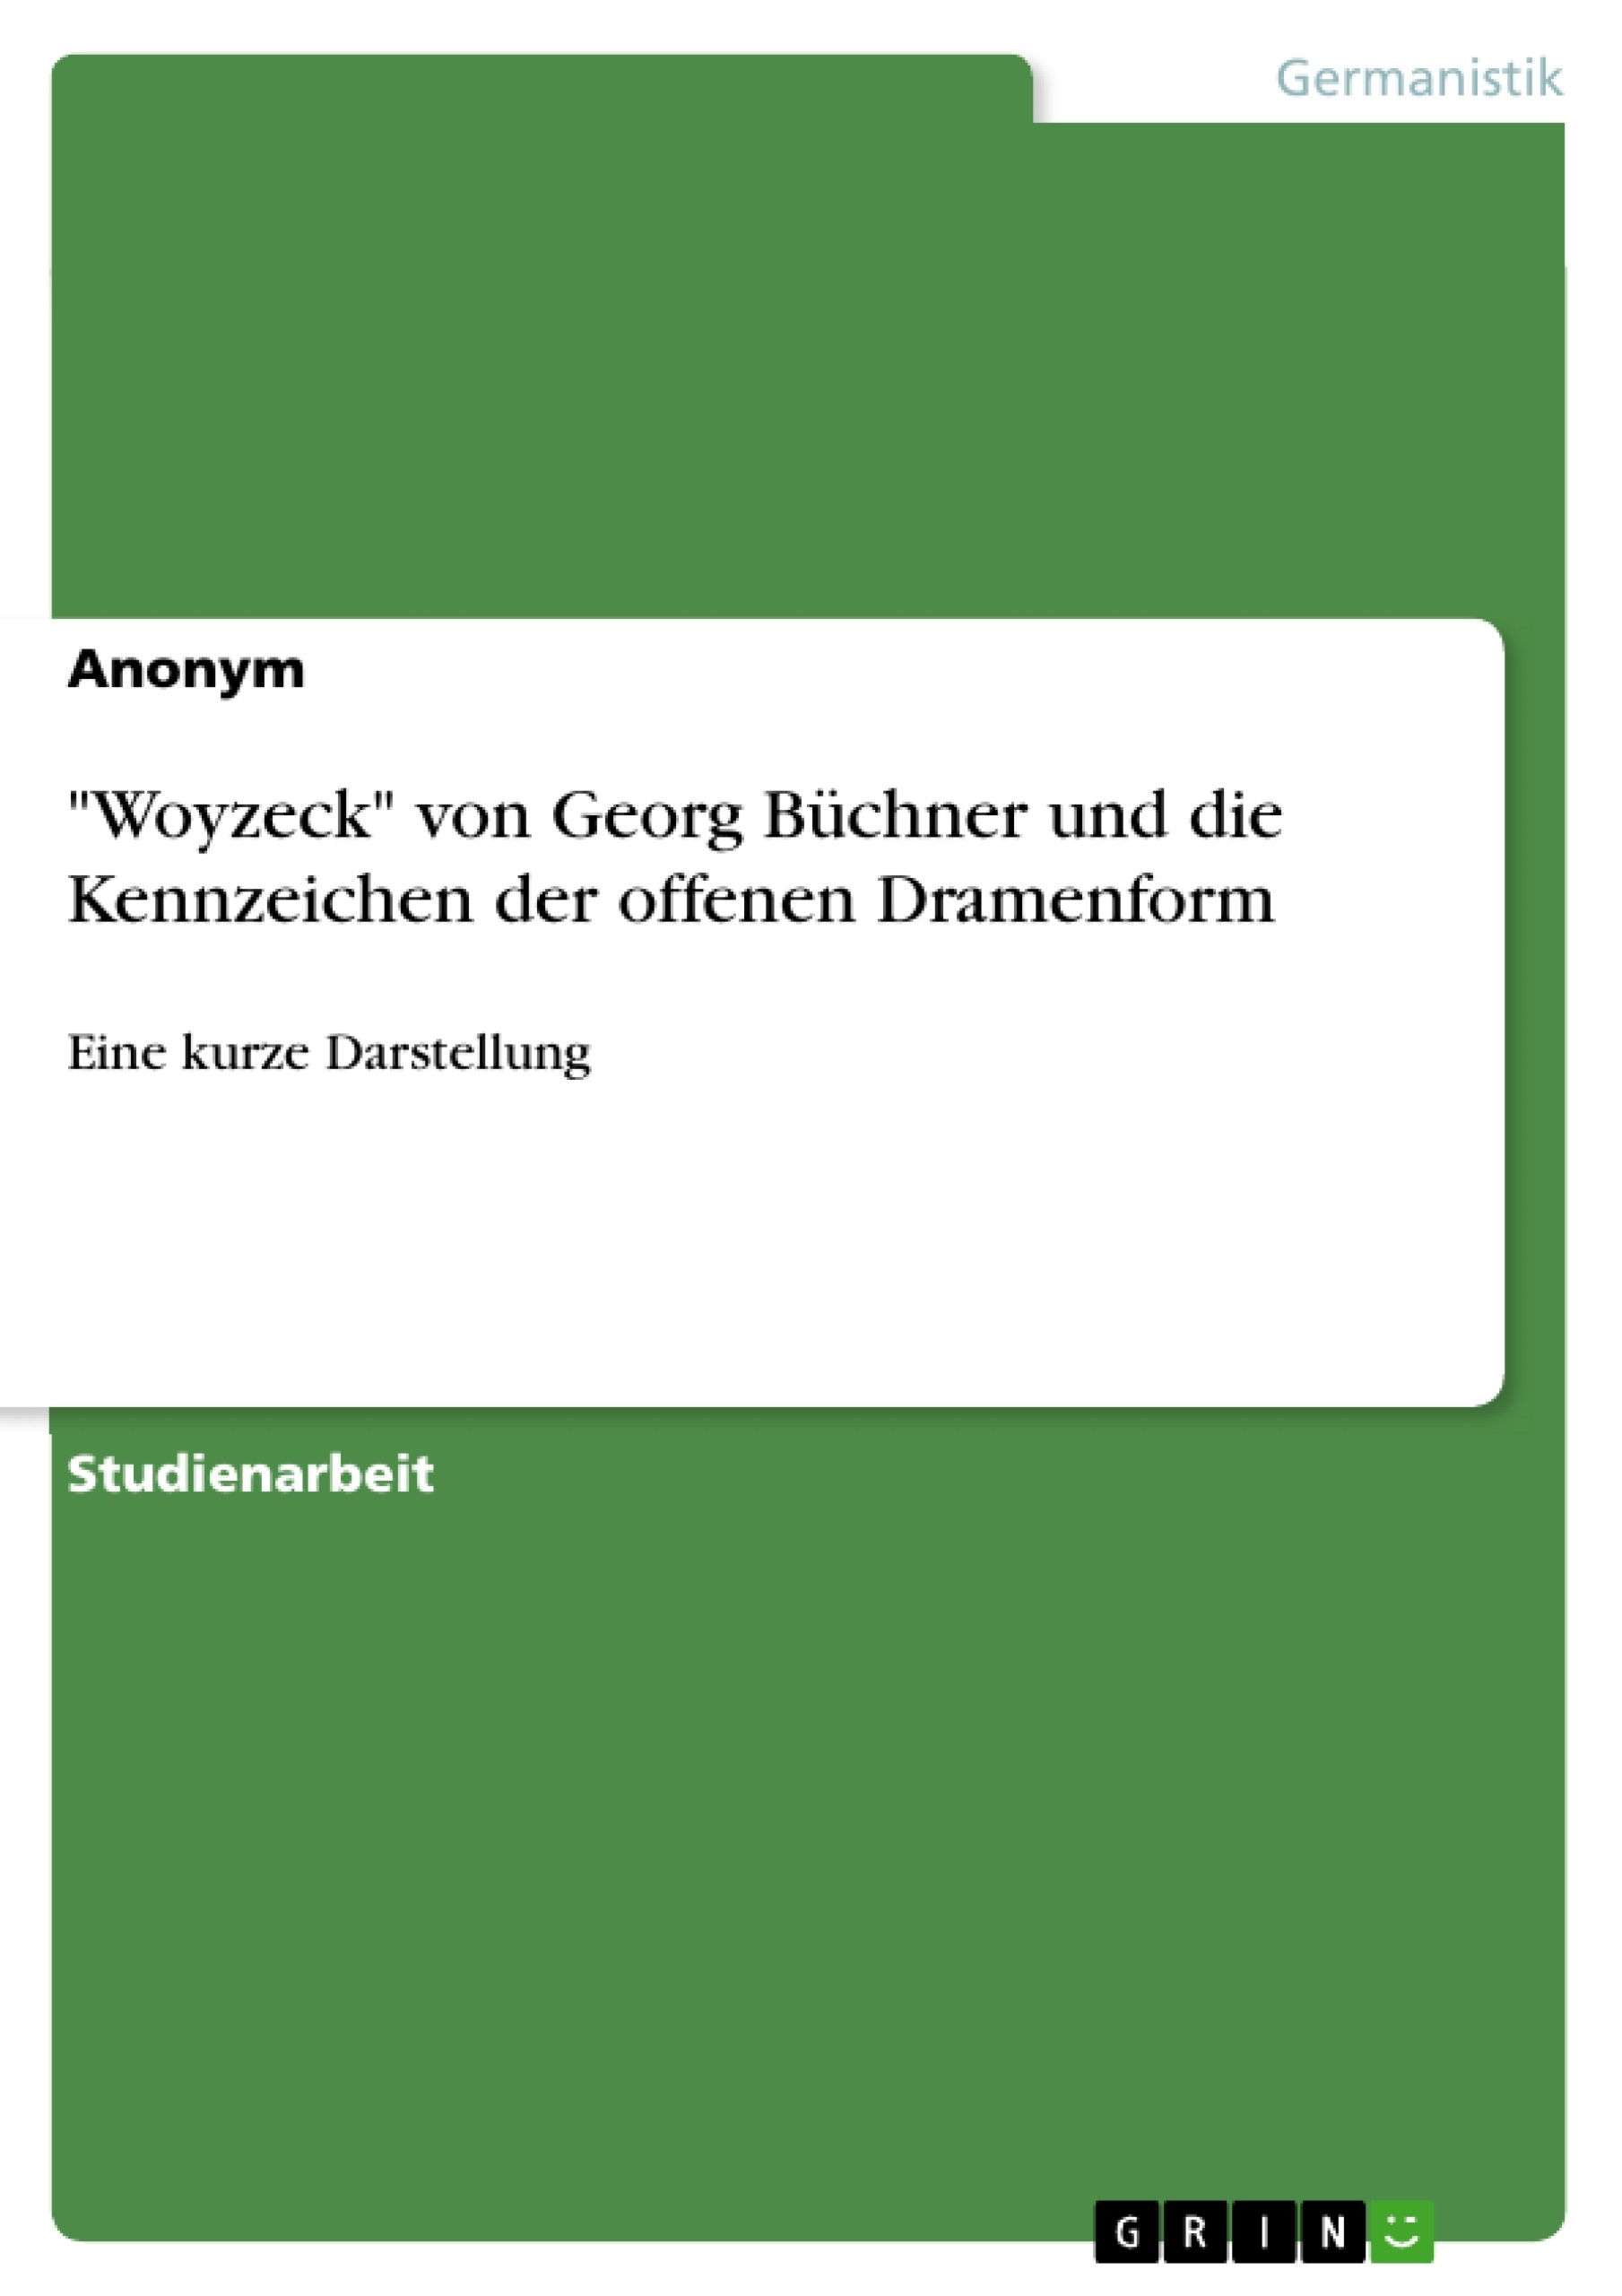 Título: "Woyzeck" von Georg Büchner und die Kennzeichen der offenen Dramenform